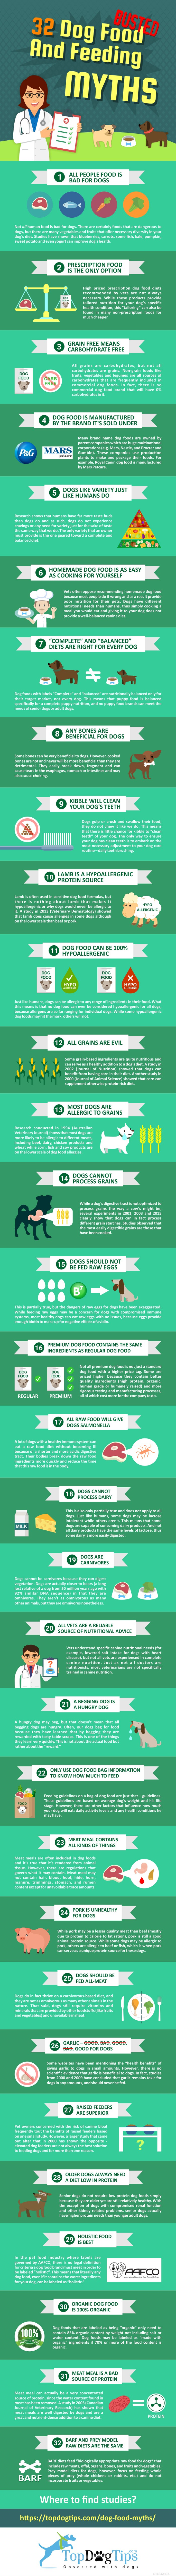 Развенчание 31 мифа о корме для собак [инфографика]